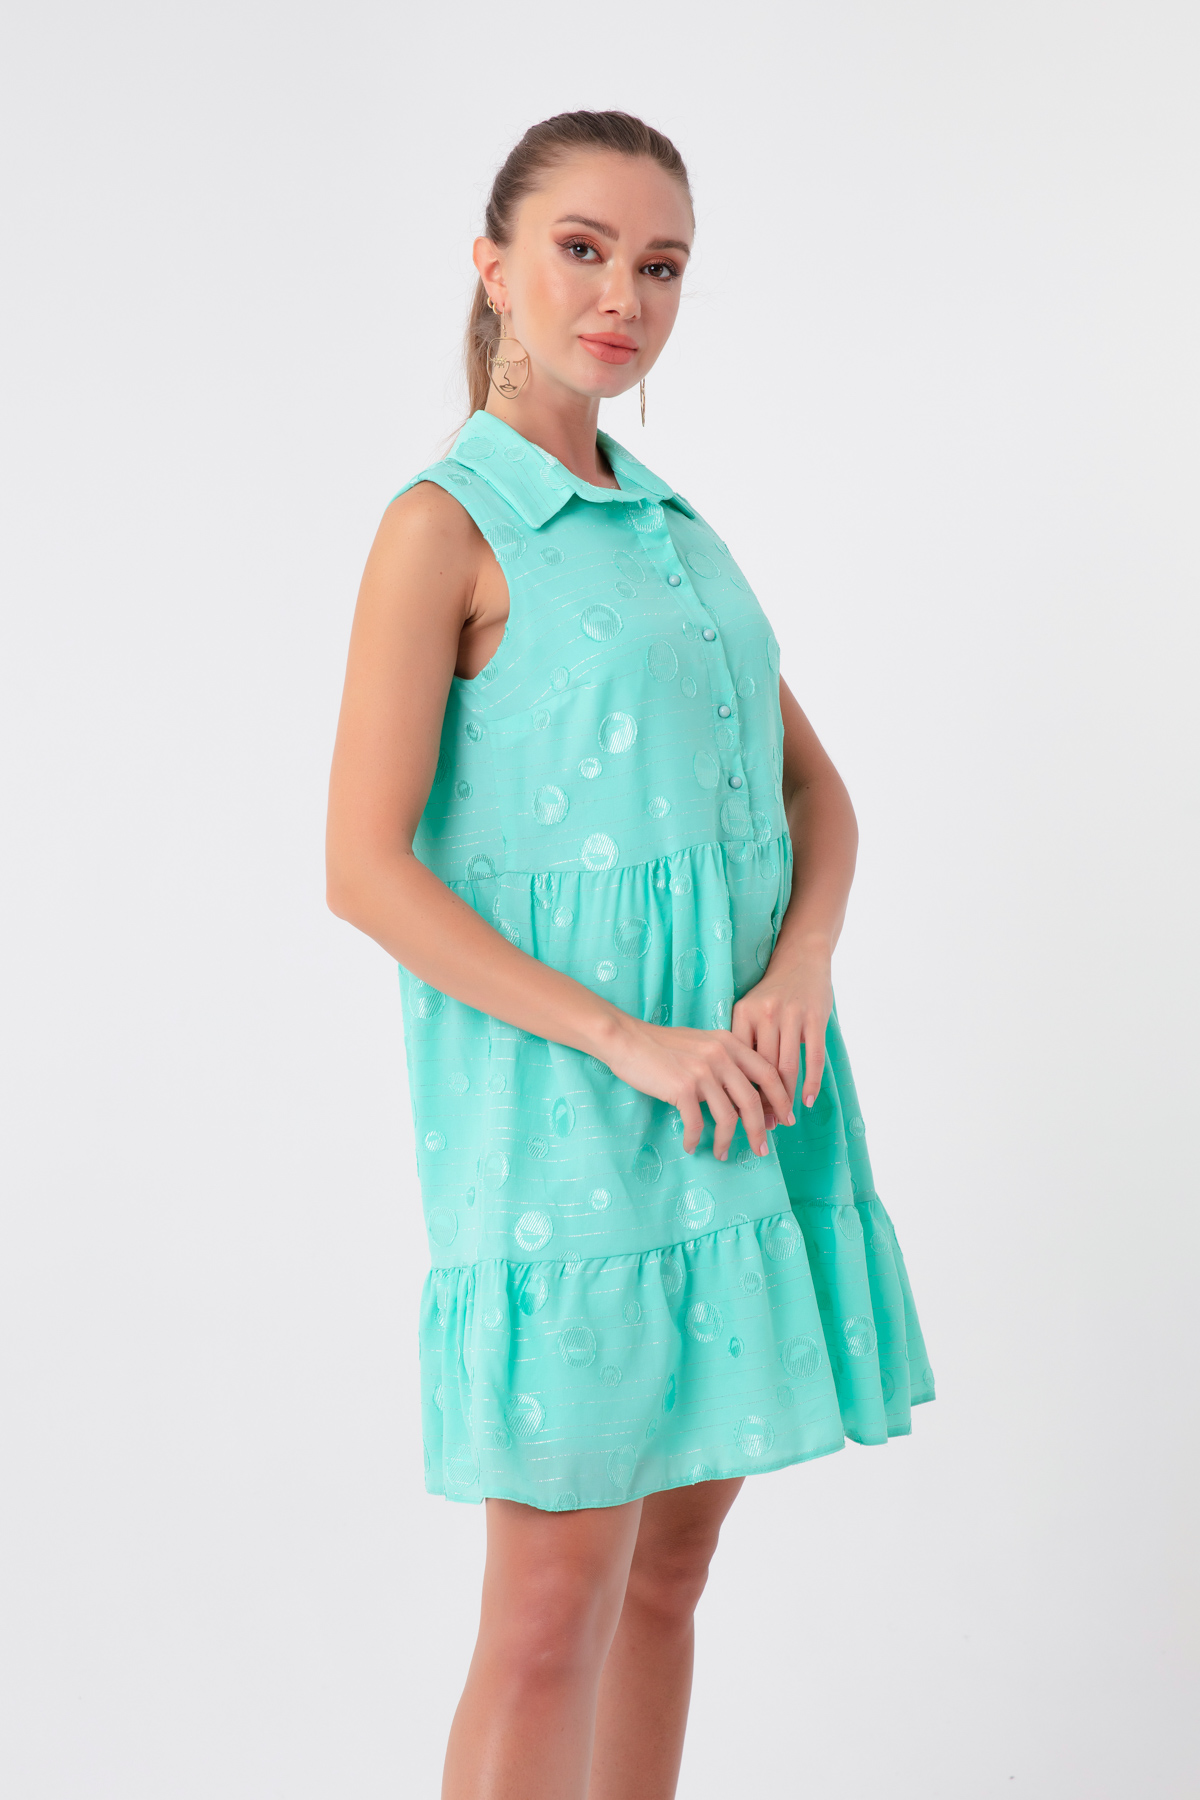 Women's Mint Green Frilly Mini Dress